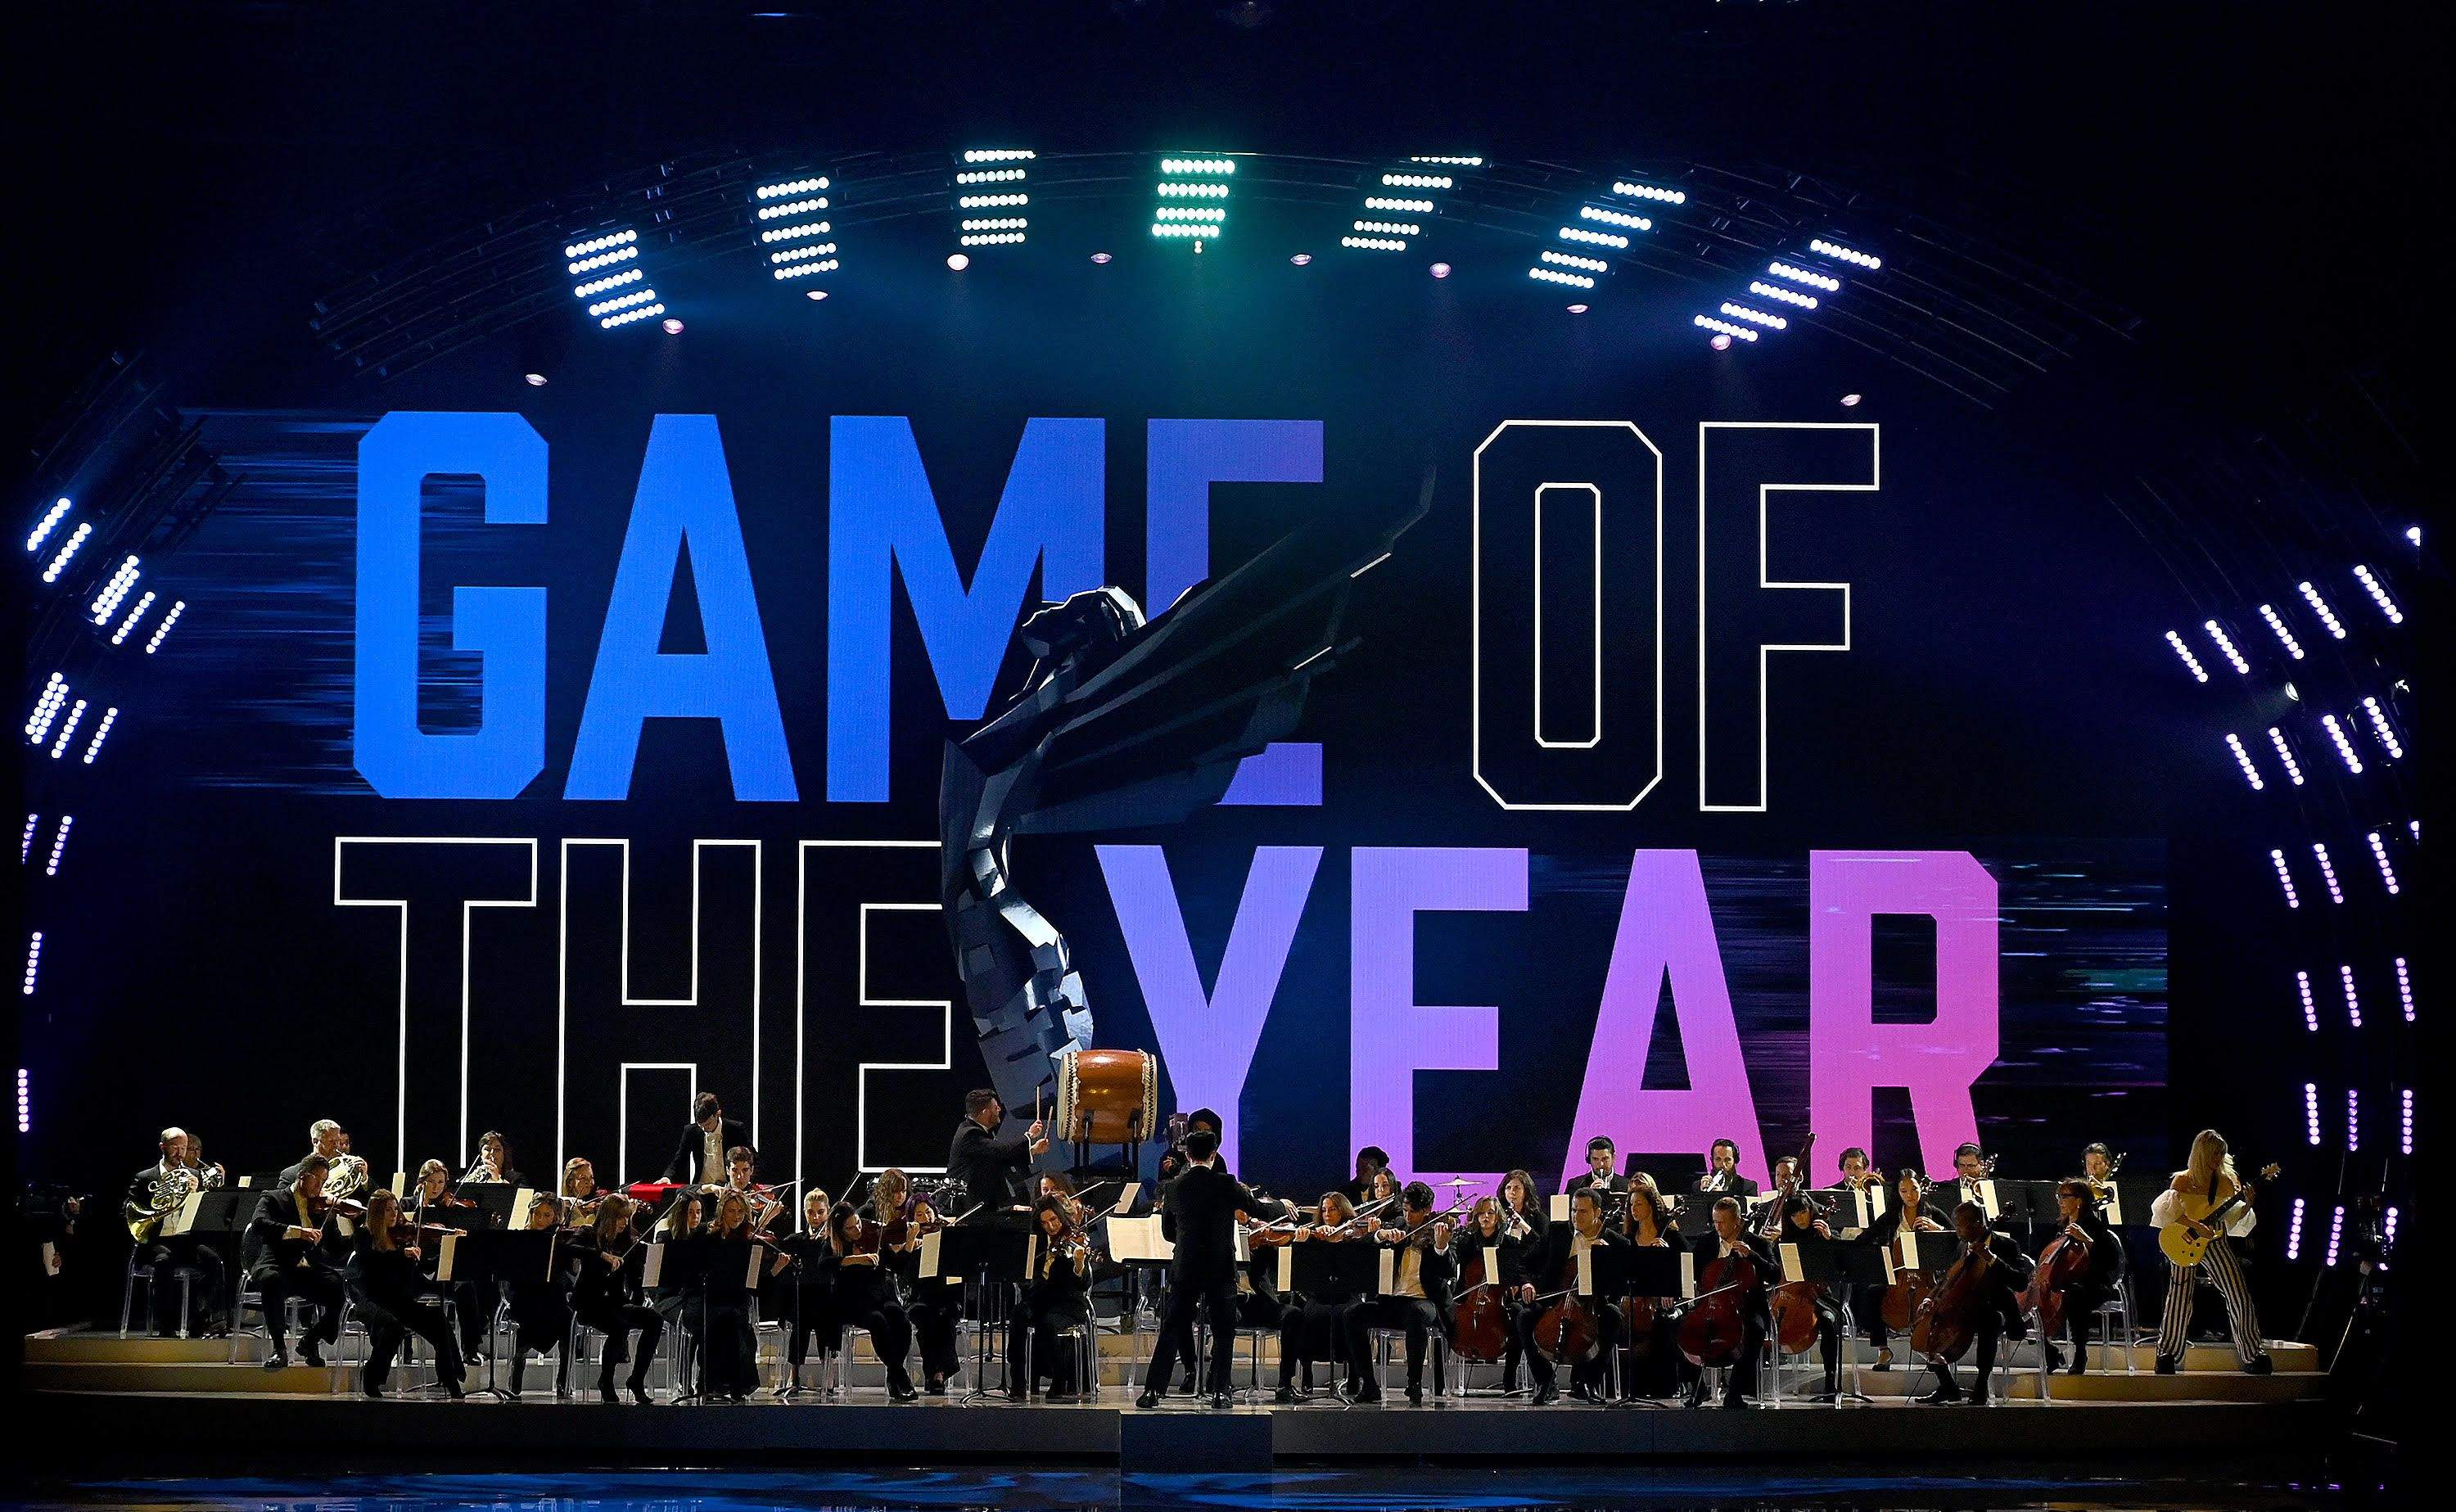 Valorant recebe cinco indicações no The Game Awards 2023 –